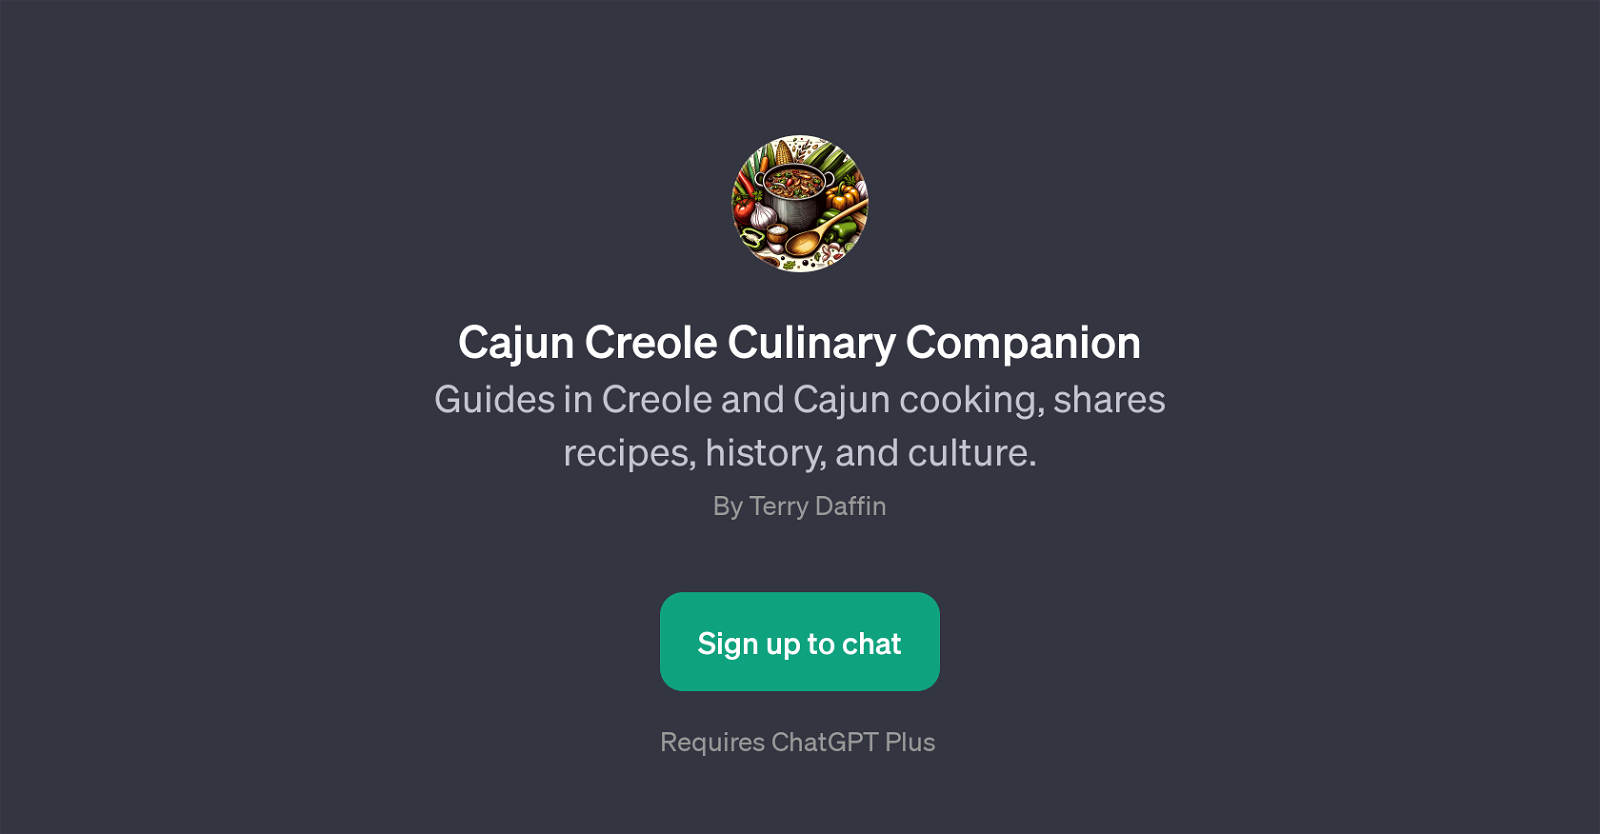 Cajun Creole Culinary Companion website